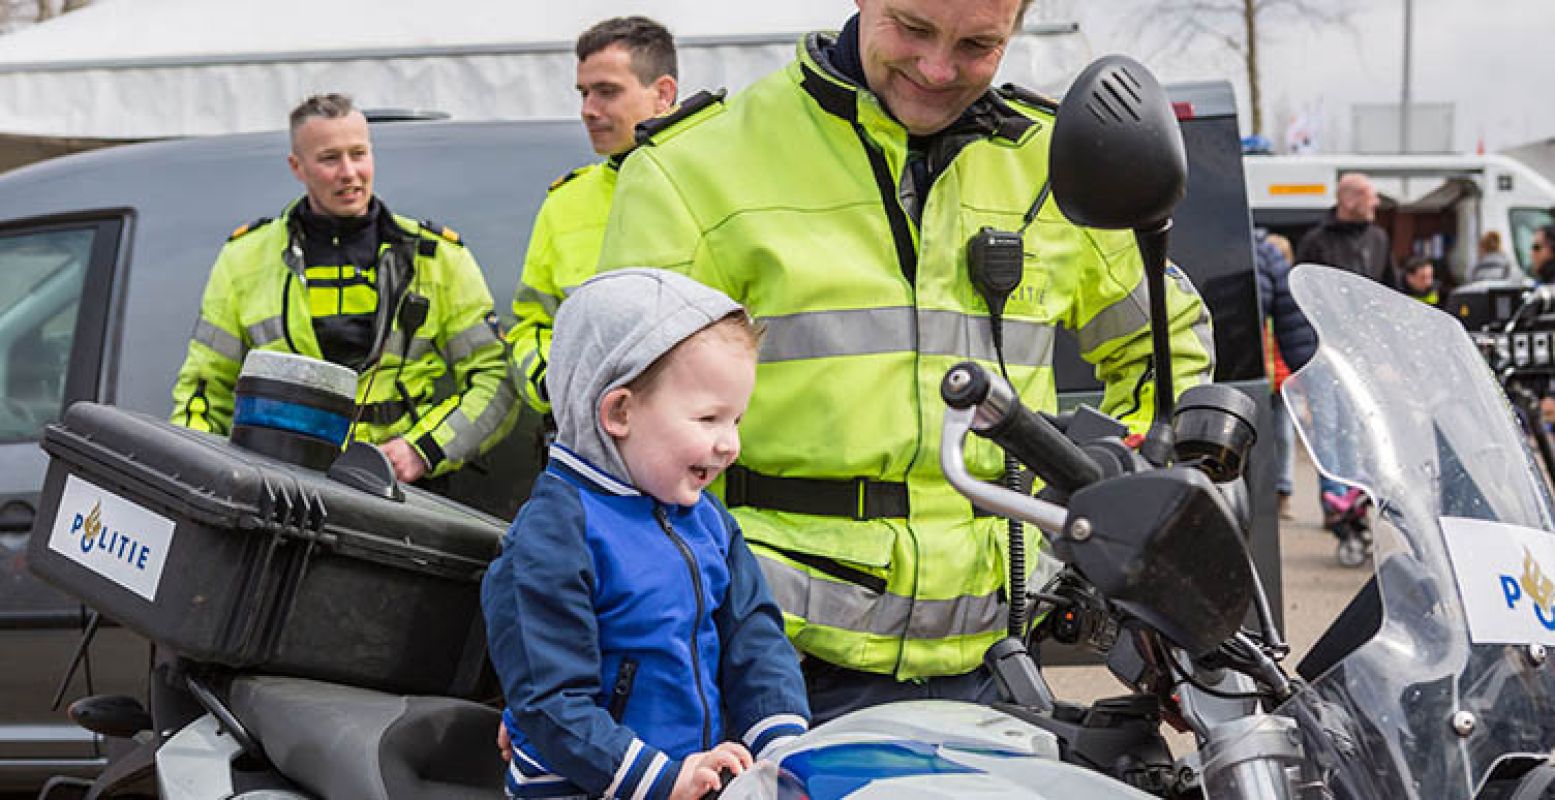 Even oefenen: misschien wordt dit jongetje later wel een politieman! Foto: Maarten Feenstra.